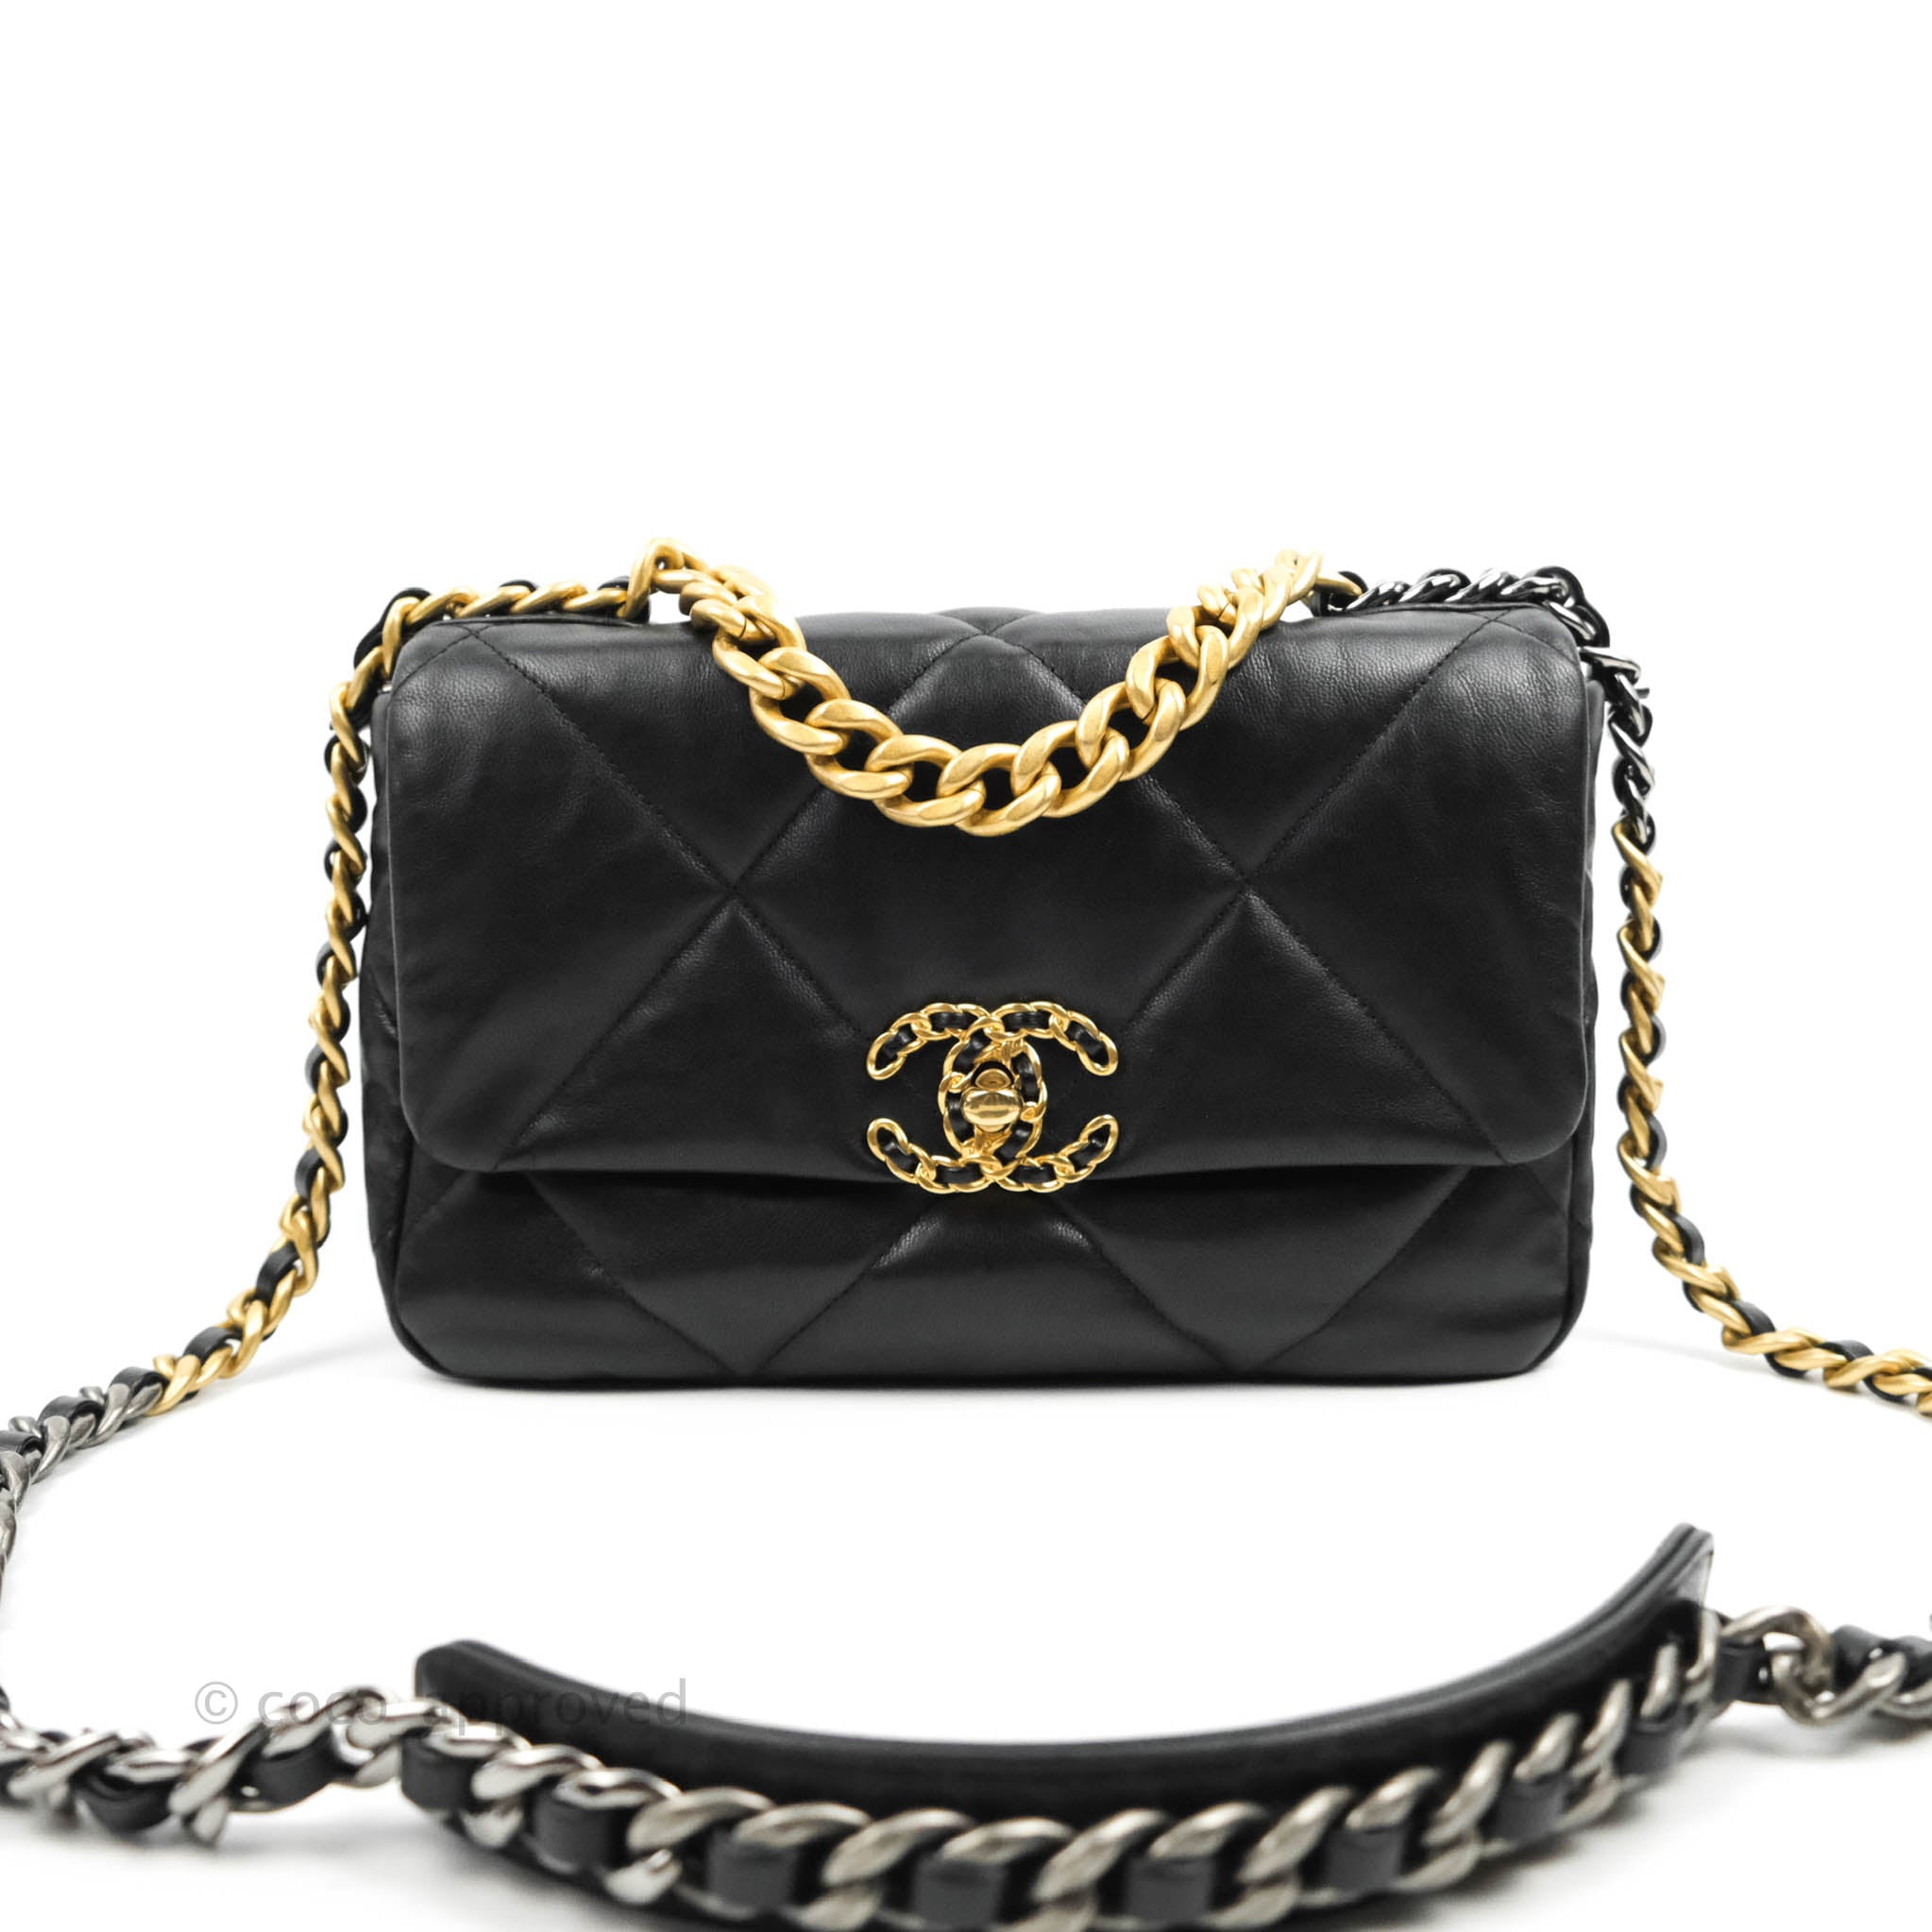 Chanel Chanel 19 Medium Flap Bag in Black Goatskin | Dearluxe